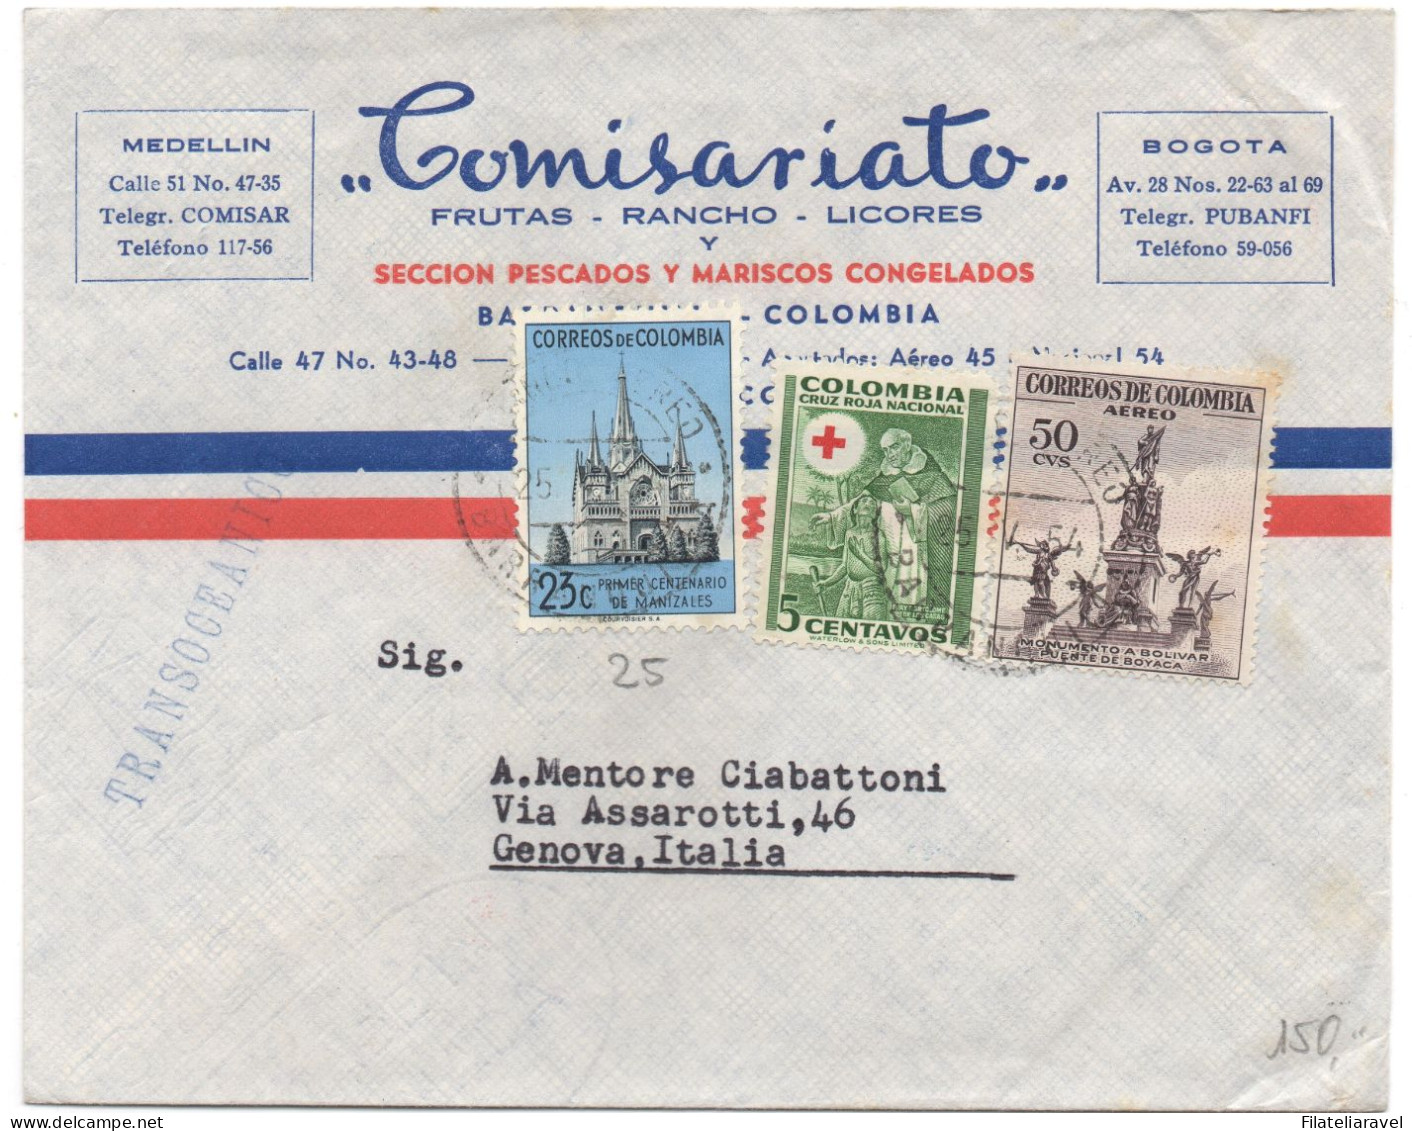 COLUMBIA  - Piccolo lotto di  17  lettere di posta aerea. Tutte viaggiate. Tutte diverse.